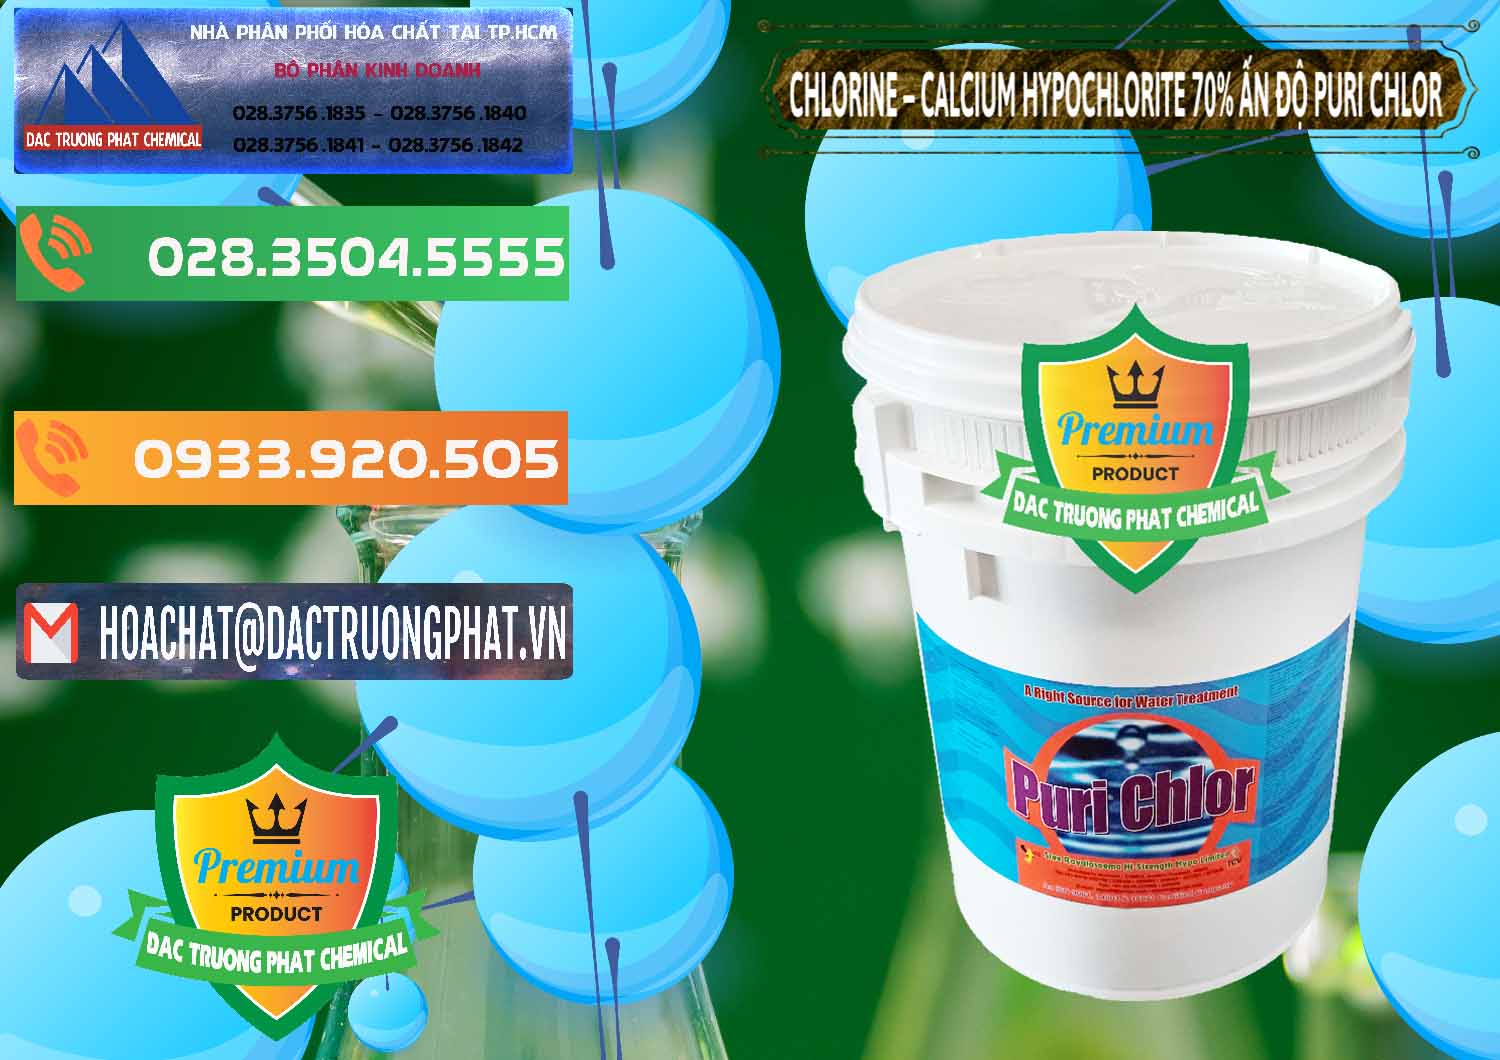 Chuyên bán và phân phối Chlorine – Clorin 70% Puri Chlo Ấn Độ India - 0123 - Cty phân phối ( cung cấp ) hóa chất tại TP.HCM - hoachatxulynuoc.com.vn